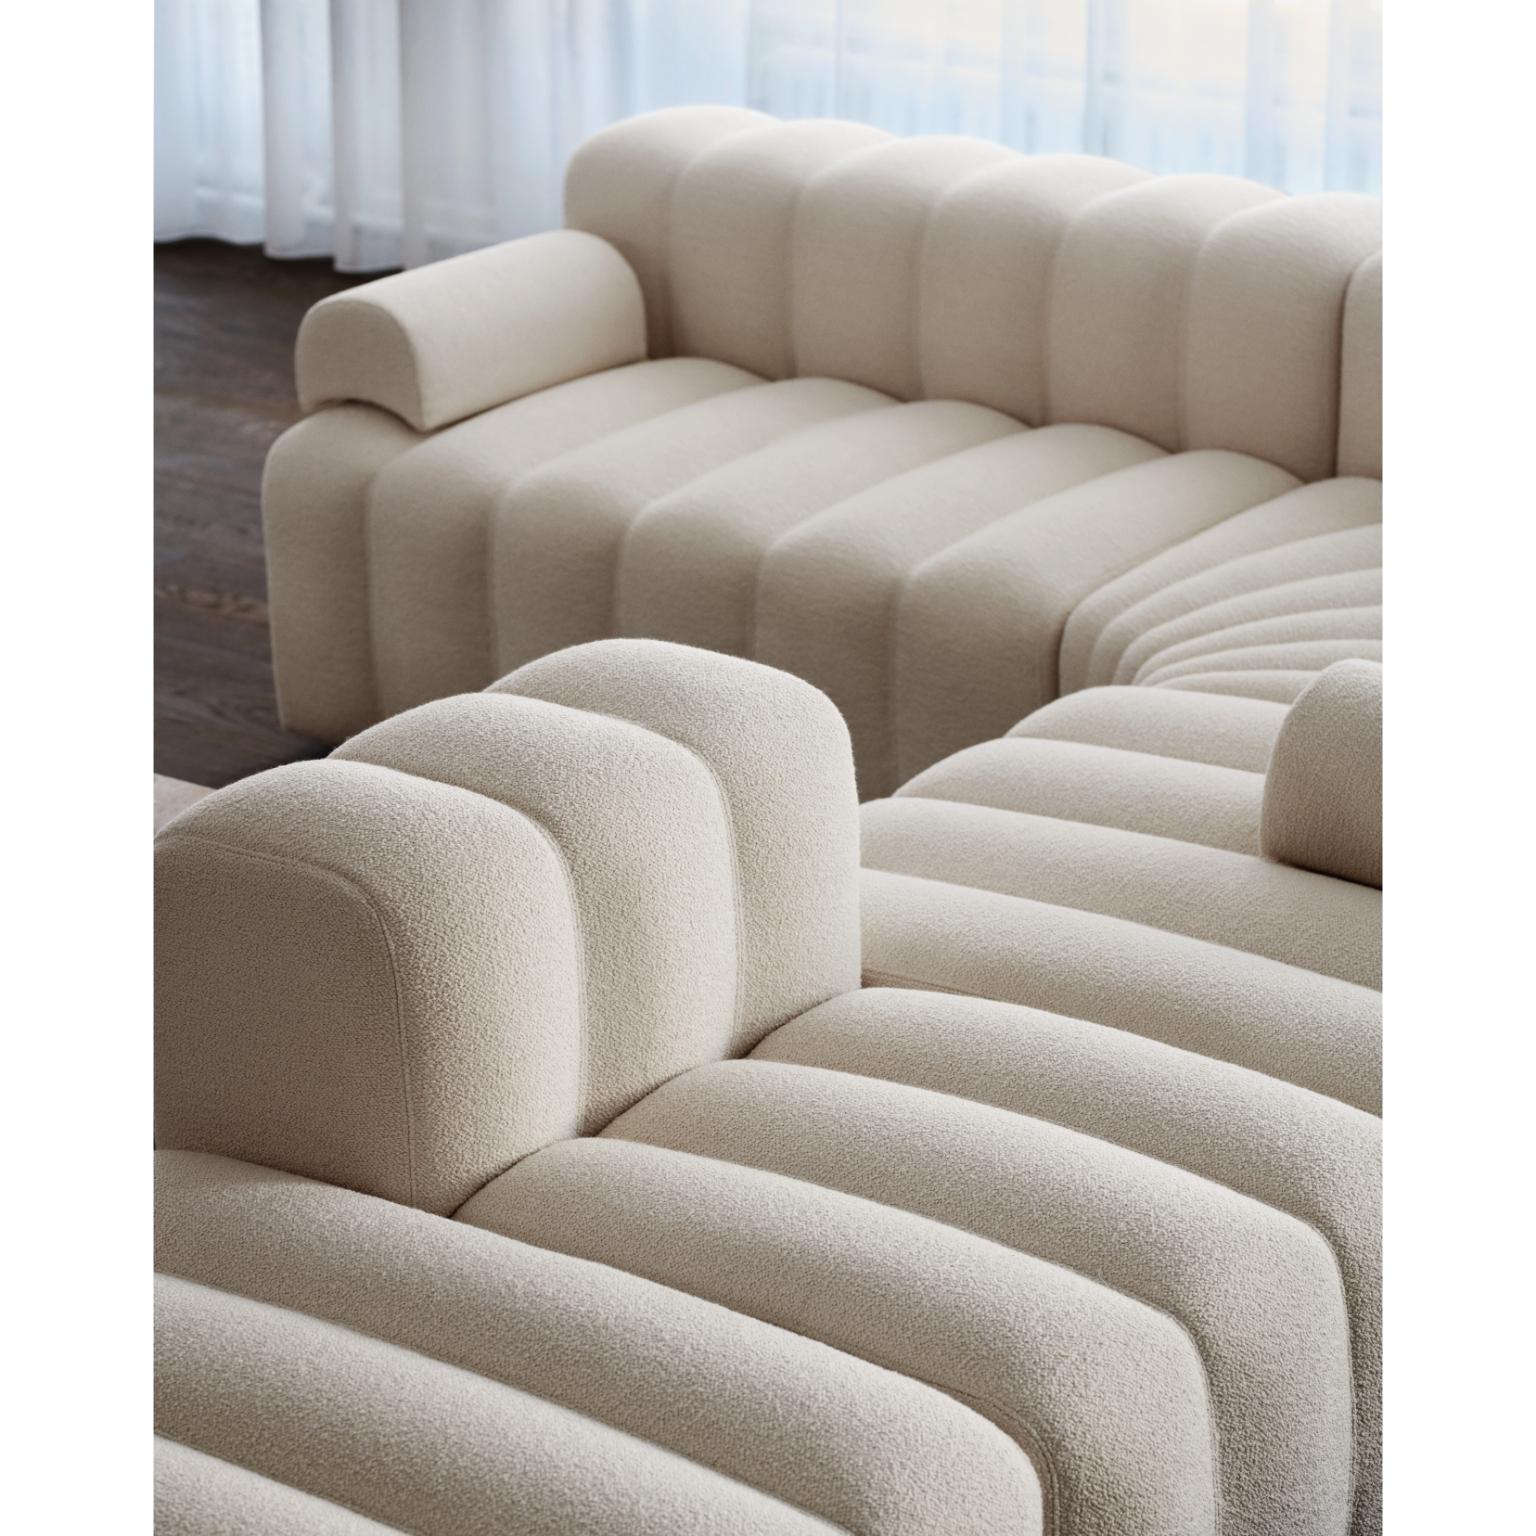 Studio Lounge-Ottoman-Sofa von NORR11
Abmessungen: T 80 x B 120 x H 47 cm. SH 47 cm. 
MATERIALIEN: Schaumstoff, Holz und Polstermaterial.
Polstermöbel: Barnum Boucle Farbe 3.

Erhältlich in verschiedenen Polstervarianten. Eine Sperrholzstruktur mit